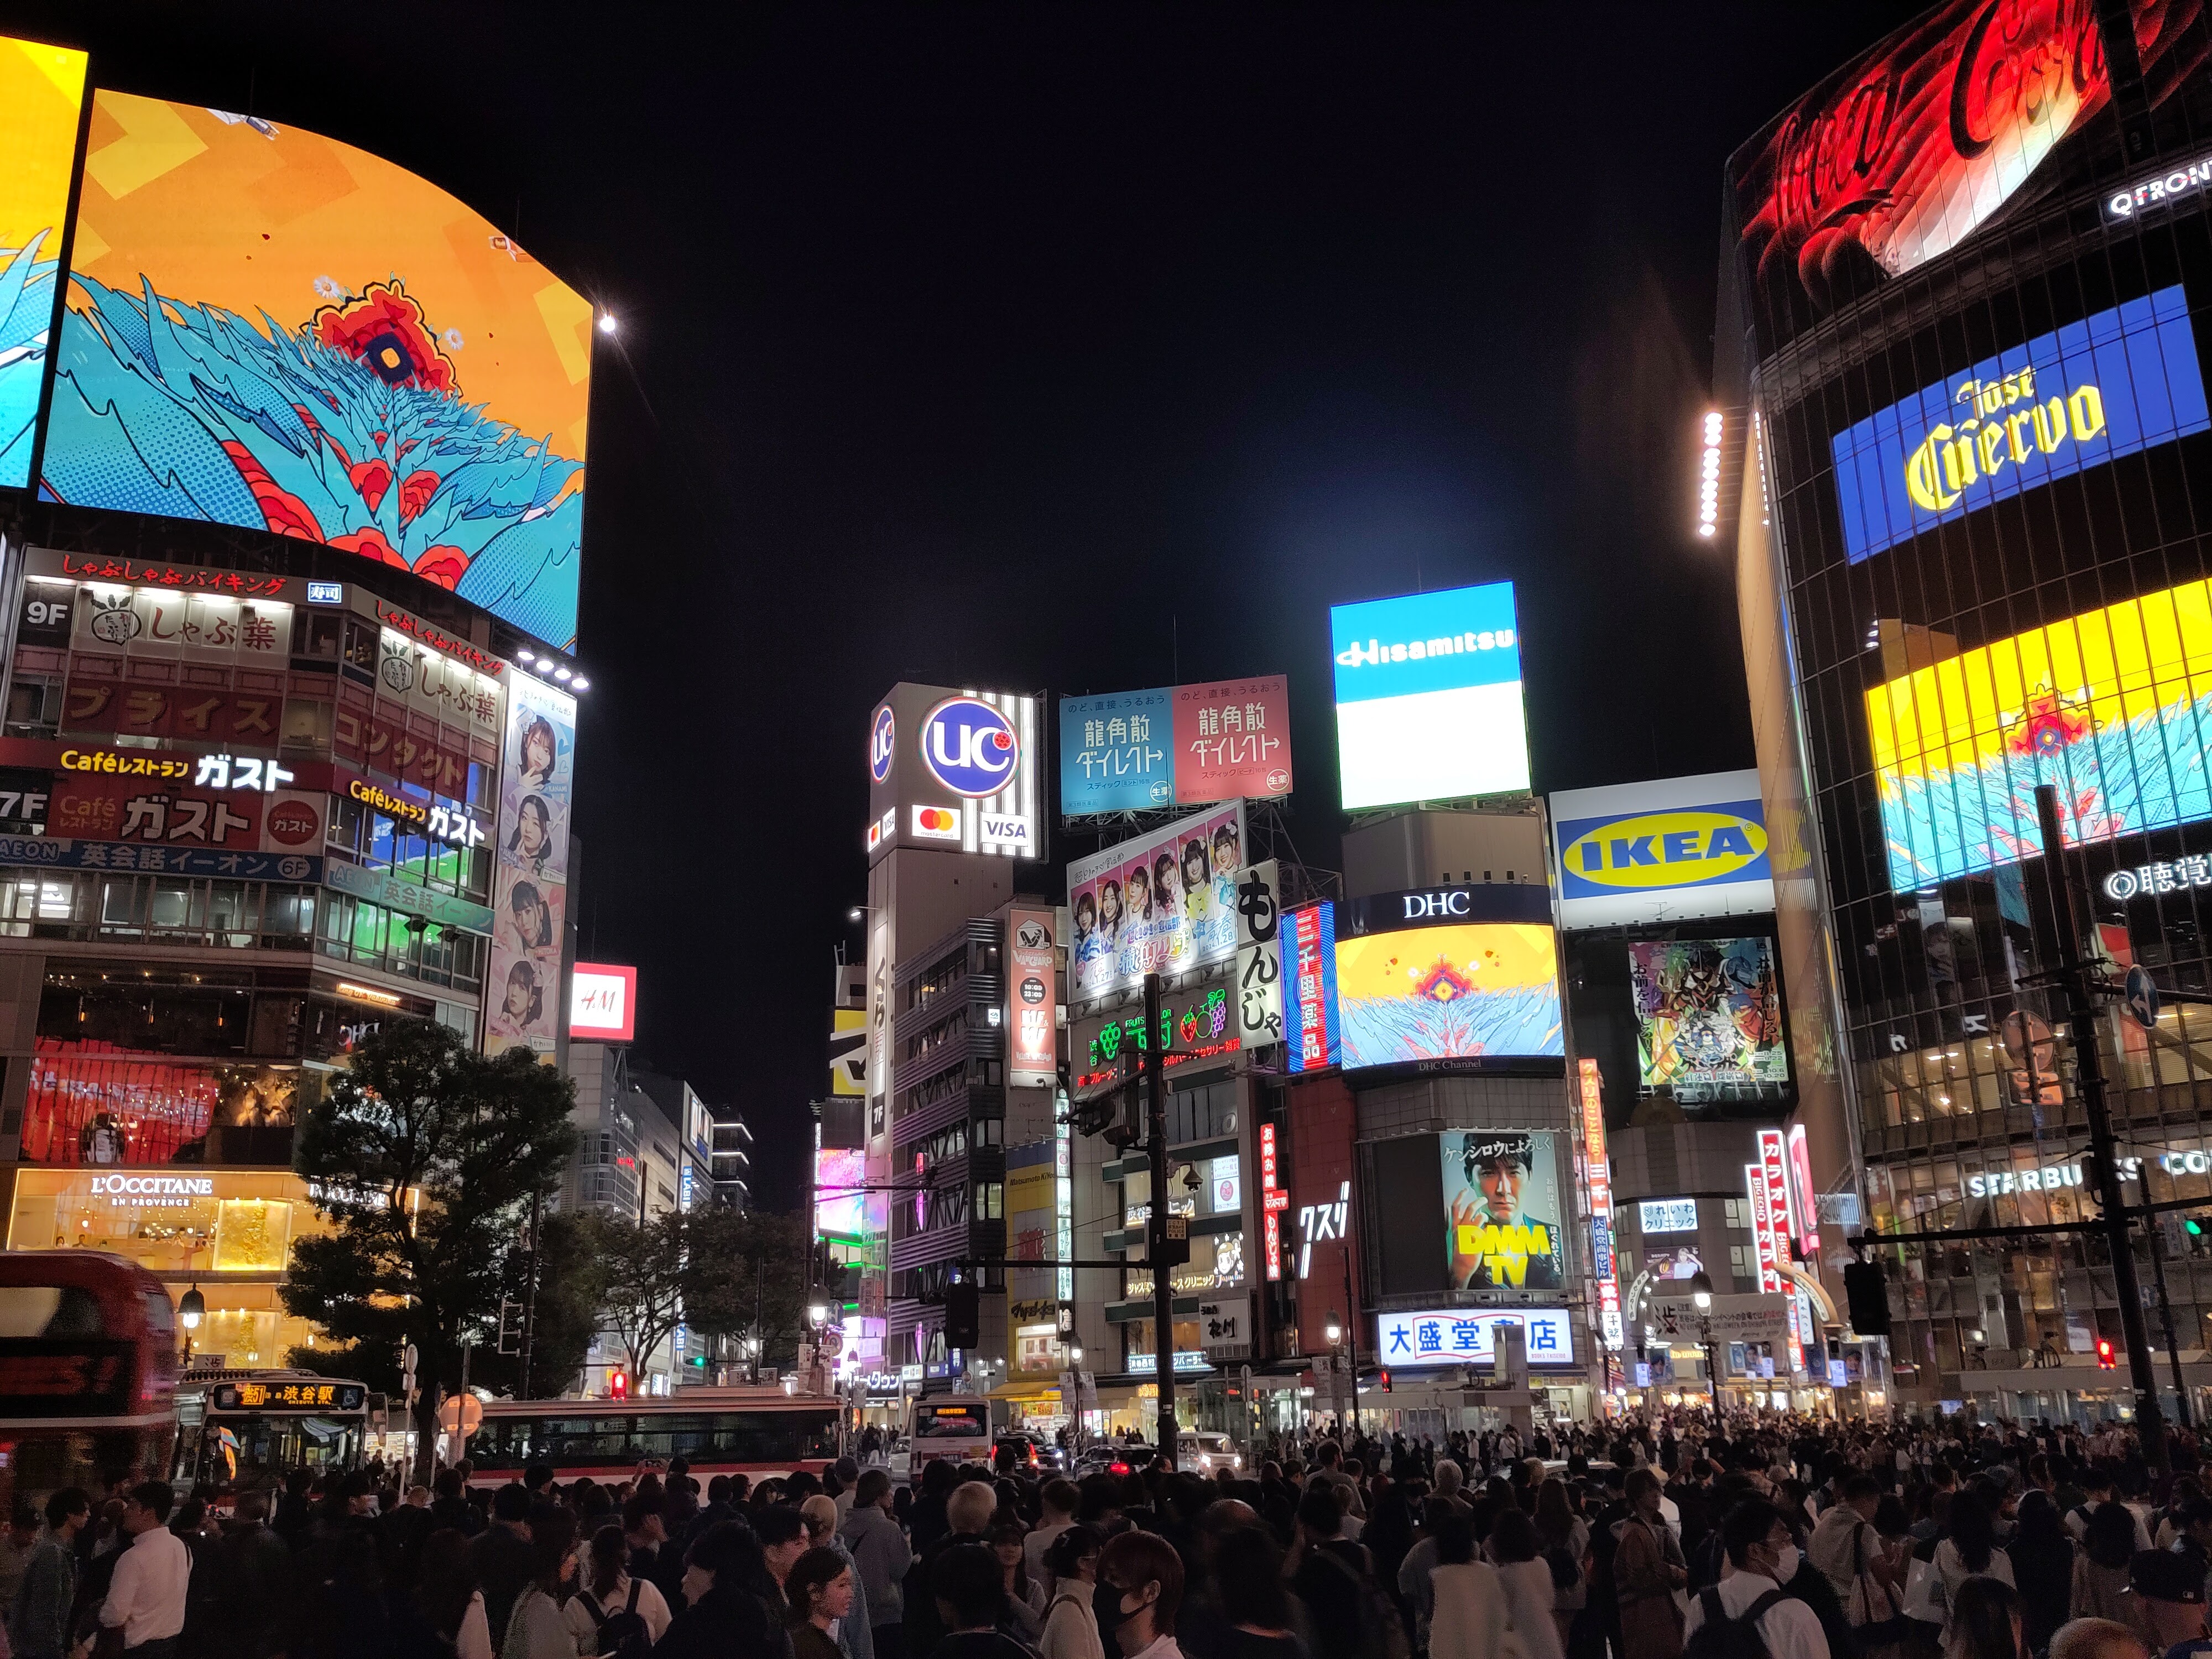 Blick auf die Shibuya-Kreuzung: Hochhäuser mit leuchtender Werbung und Menschenmassen.